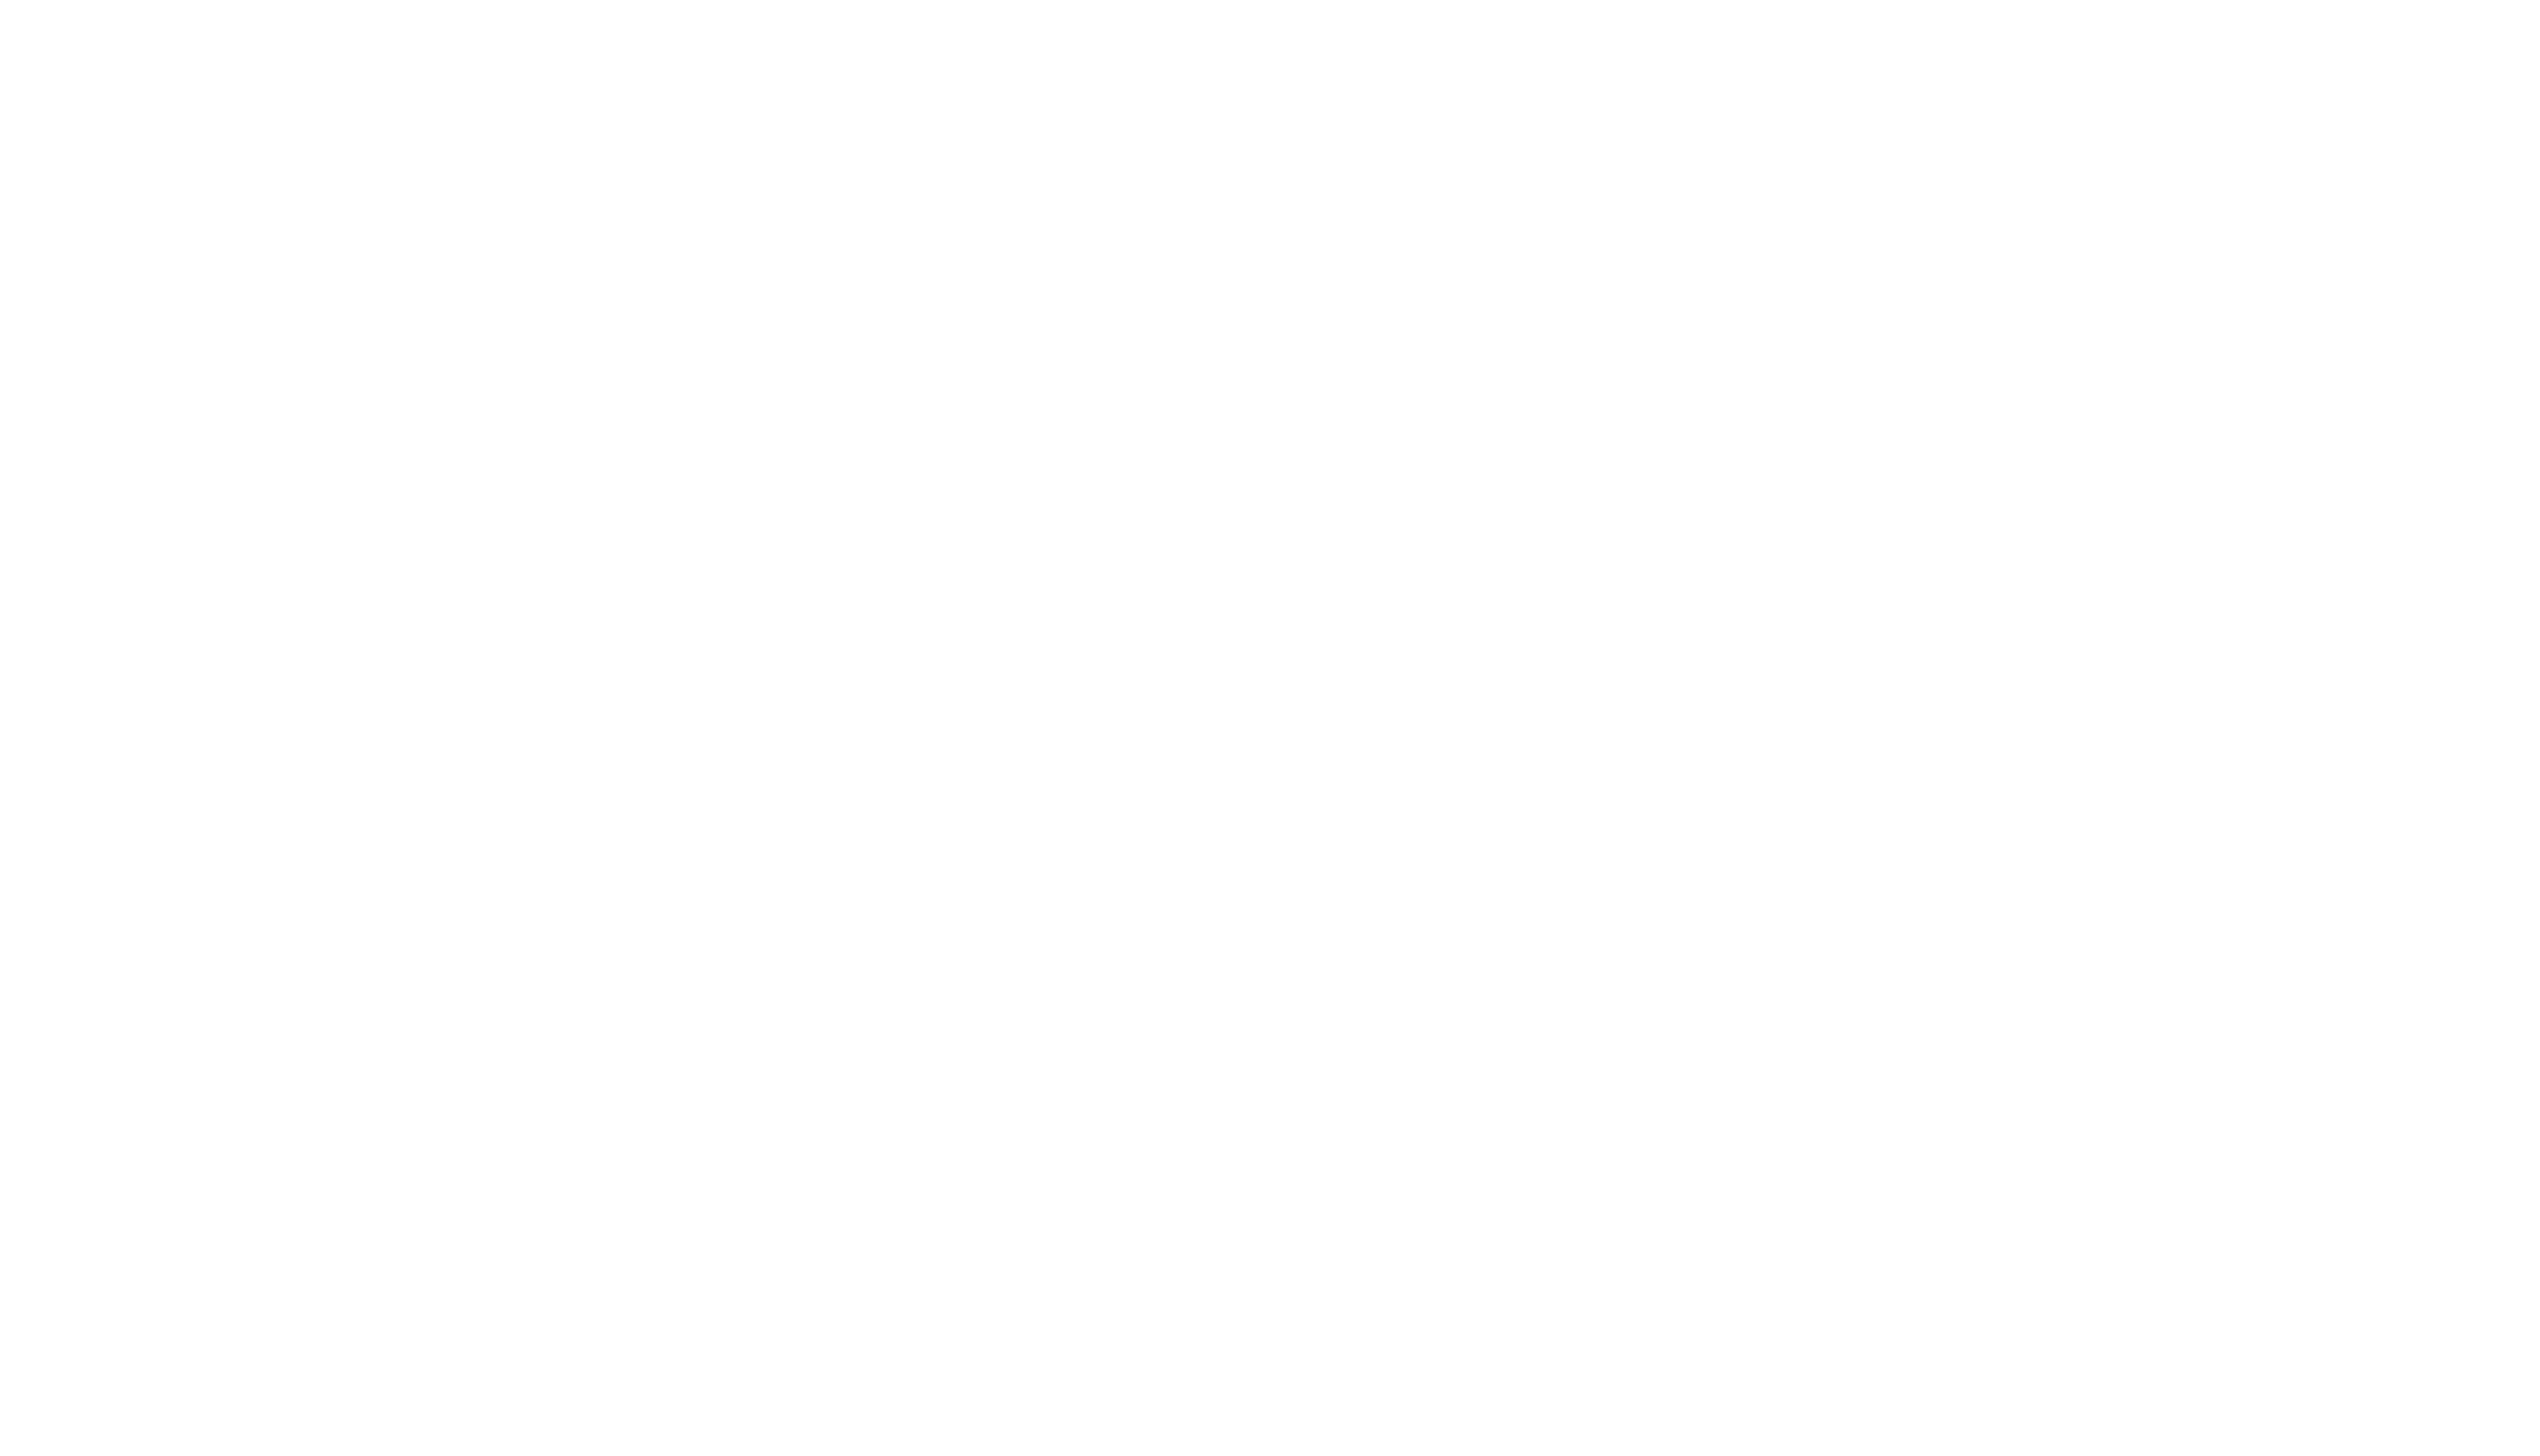 spiderlift-pion-black.png